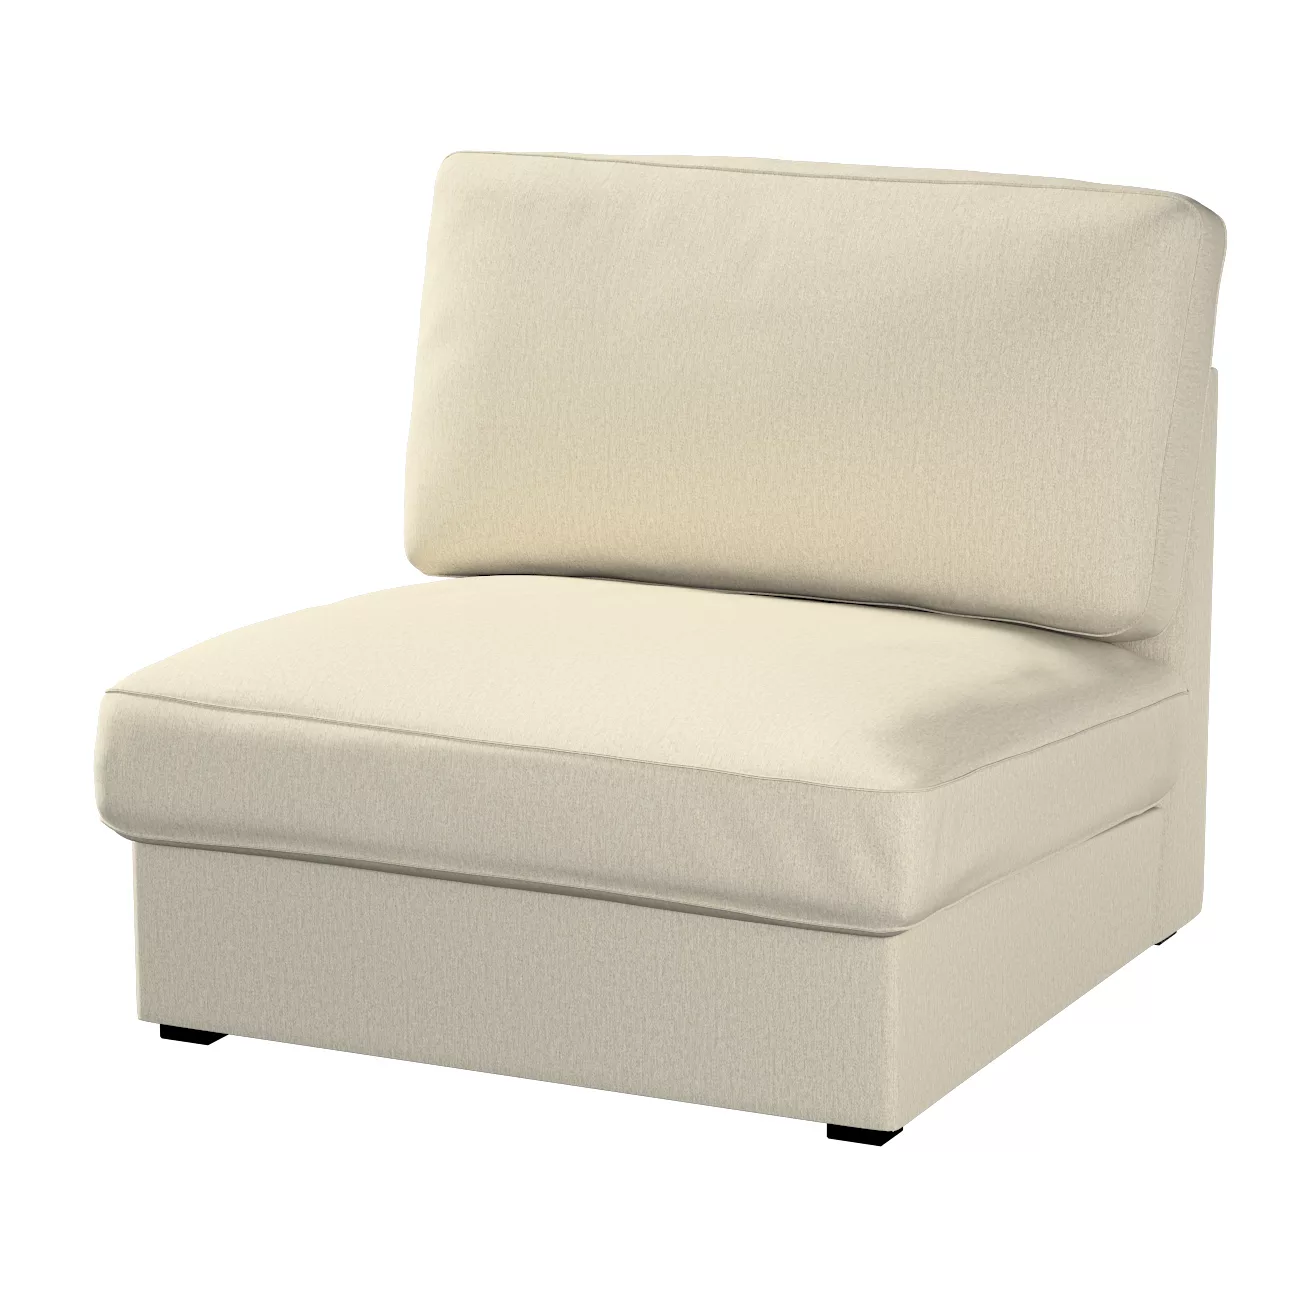 Bezug für Kivik Sessel nicht ausklappbar, beige-grau, Bezug für Sessel Kivi günstig online kaufen